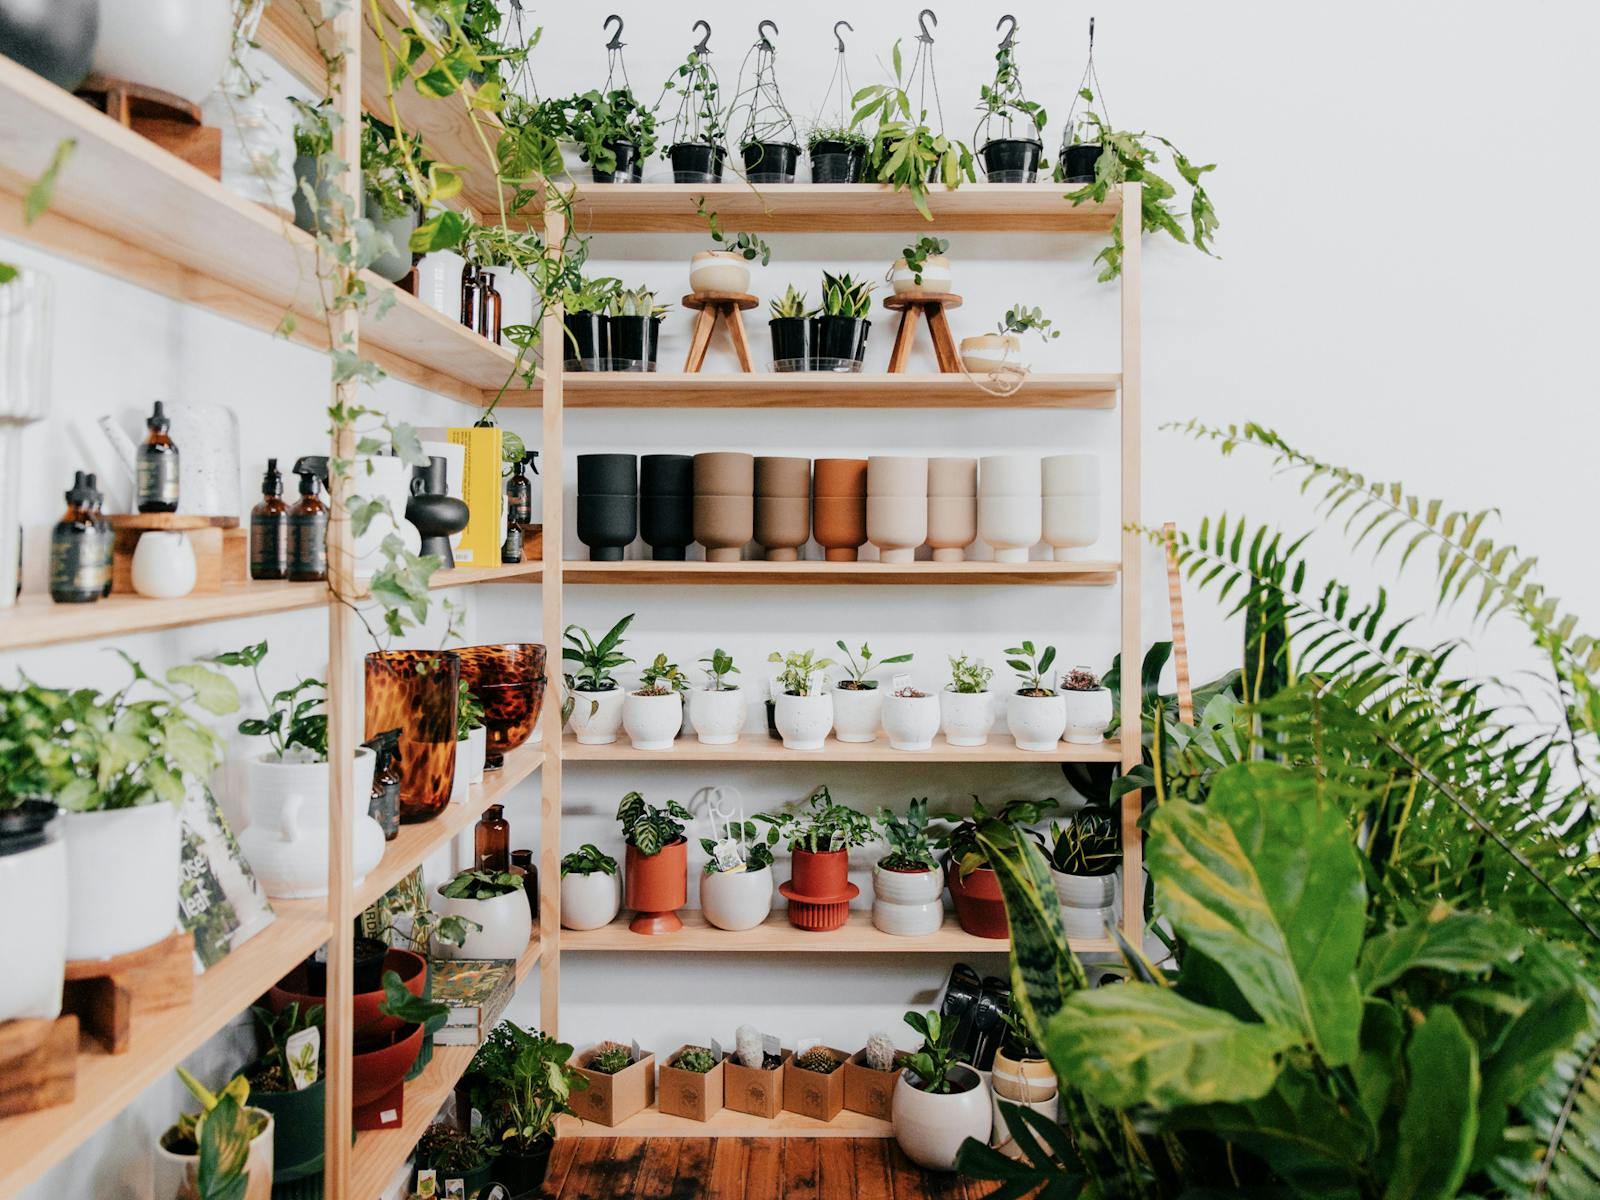 Plants and pots on shelf